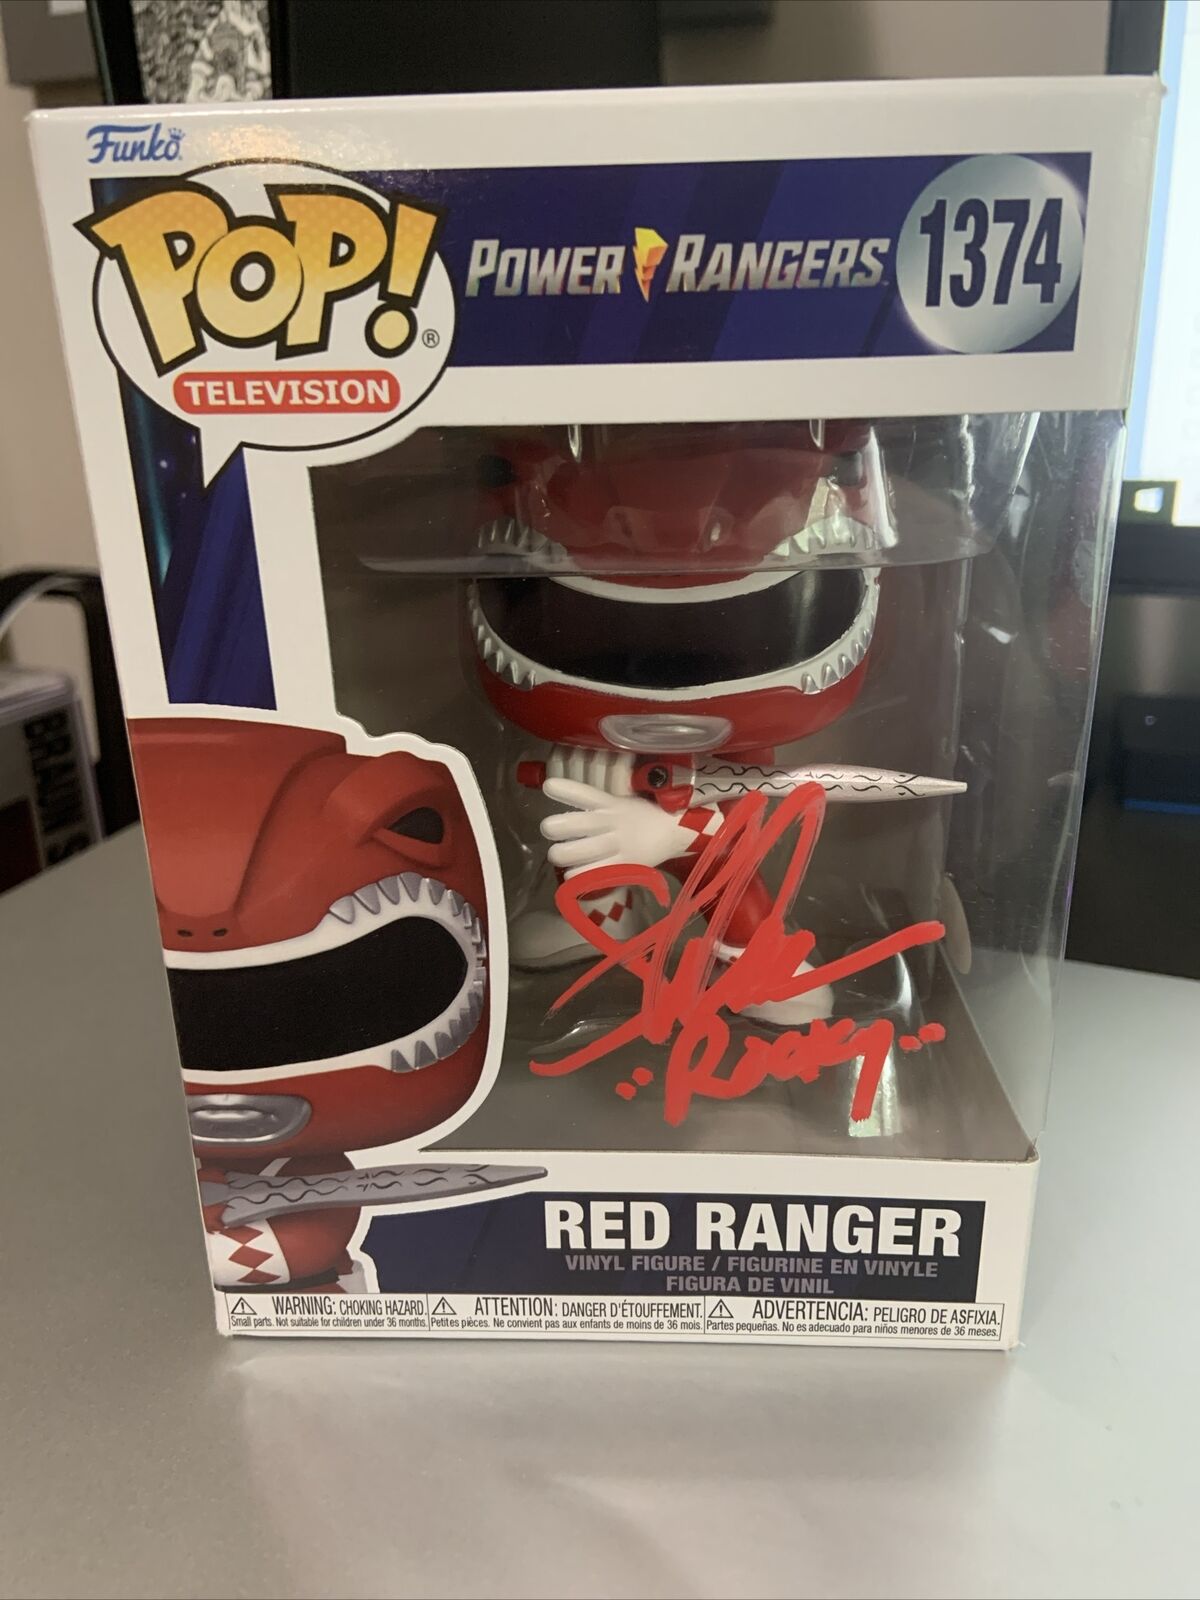 Funko Pop Power Rangers #1374 Red Ranger Steve Cardenas Signed w/JSA COA